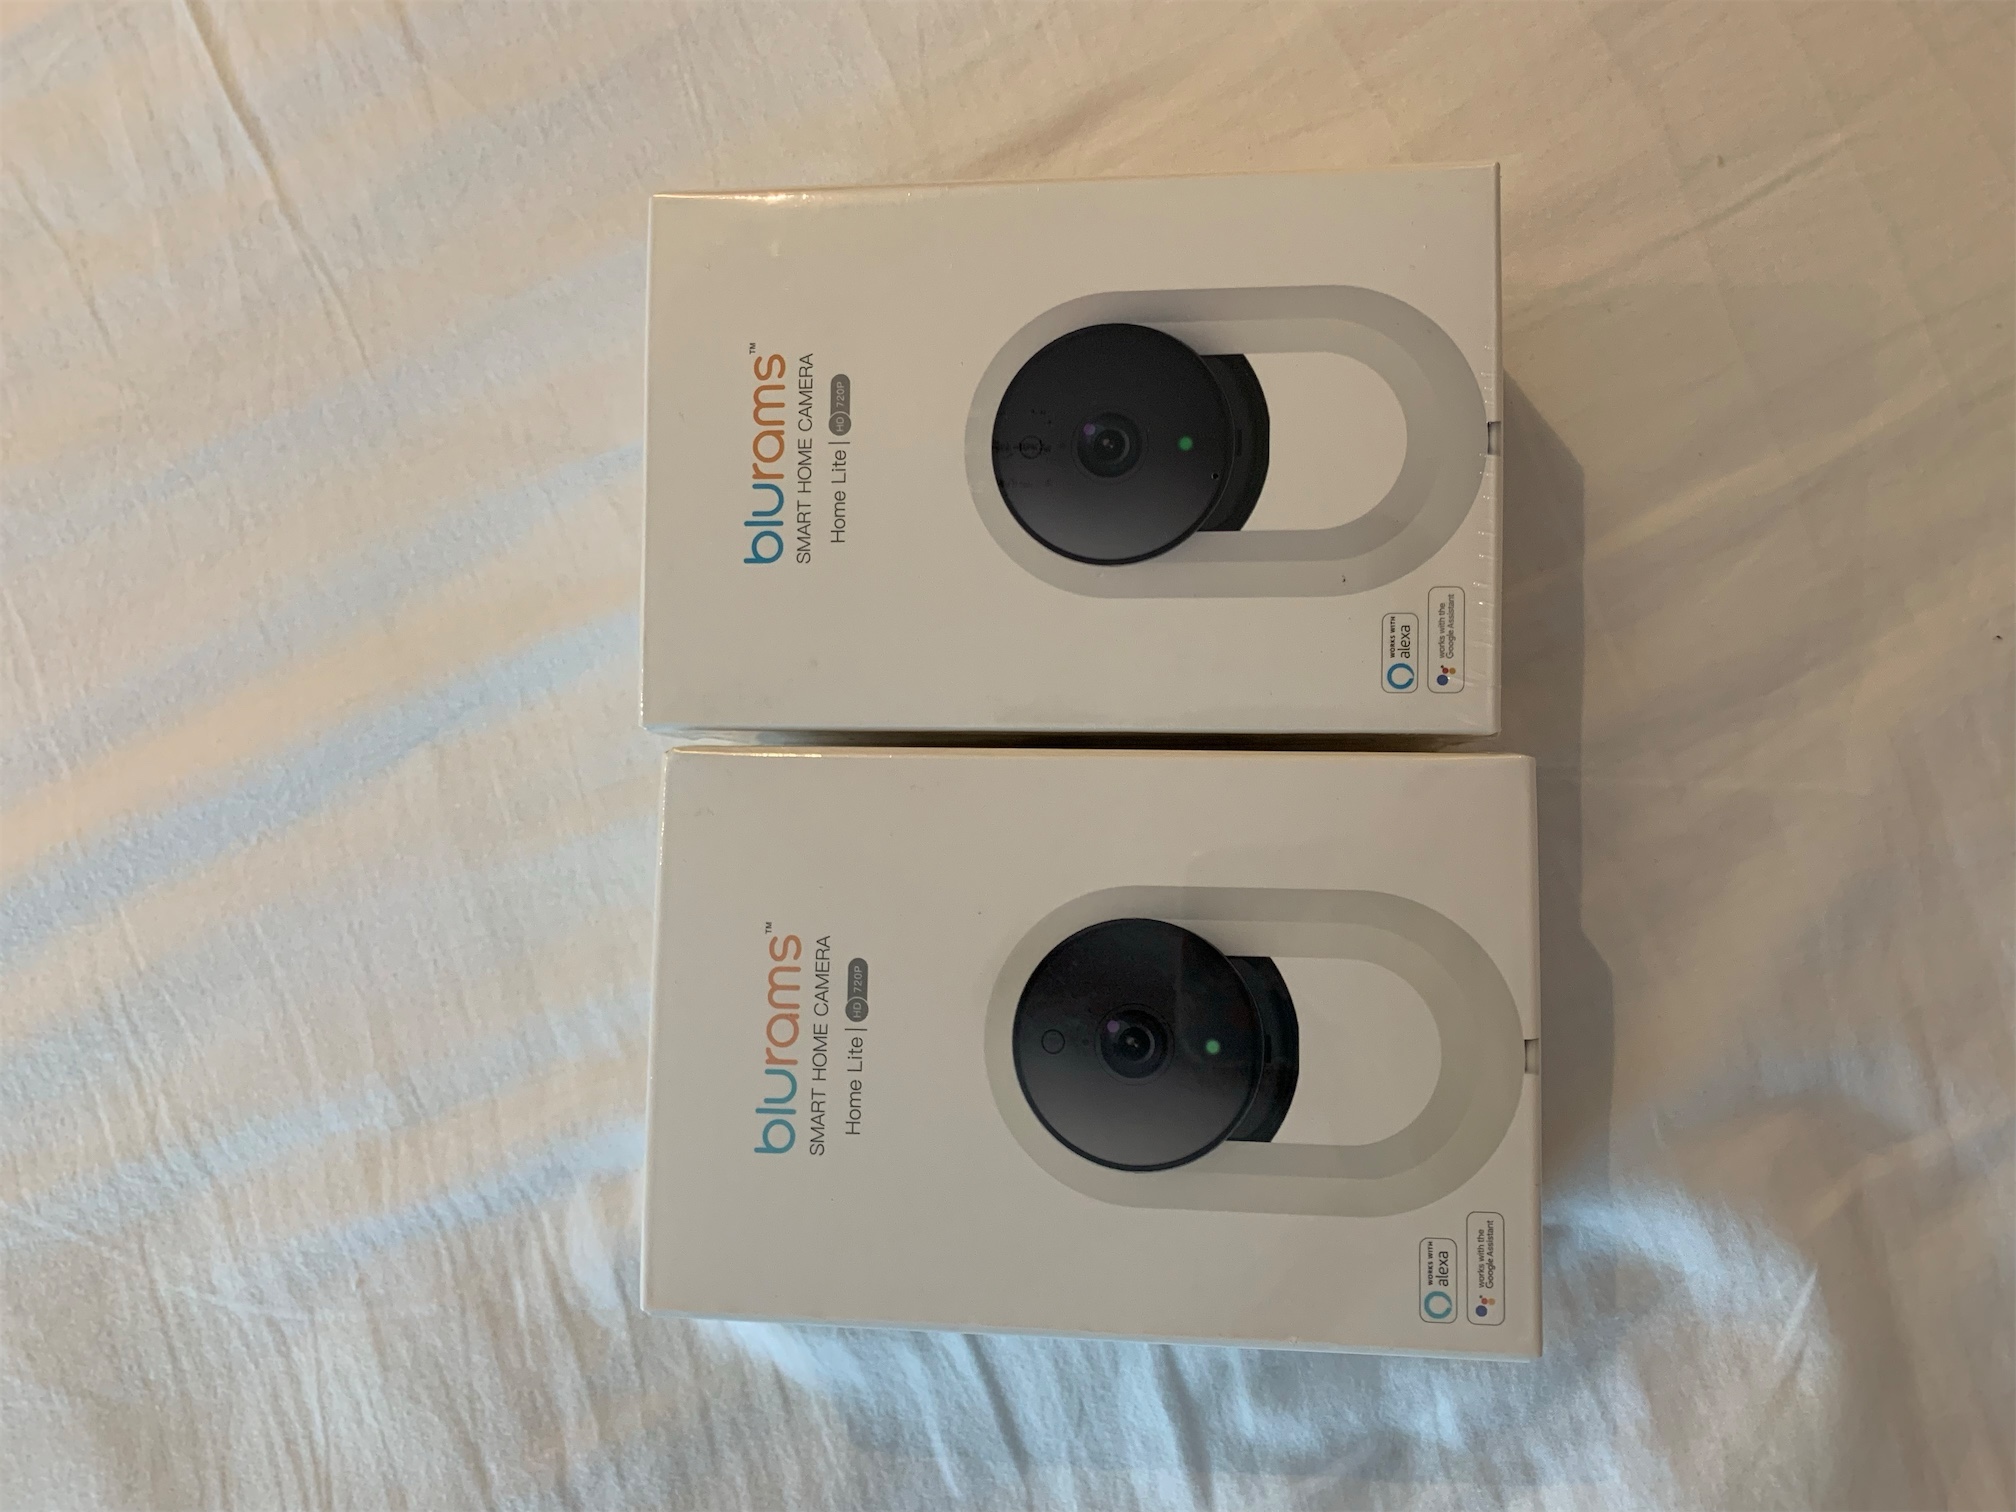 camaras y audio - Se venden dos Cámaras de Seguridad totalmente nuevas compatible con Alexa 0